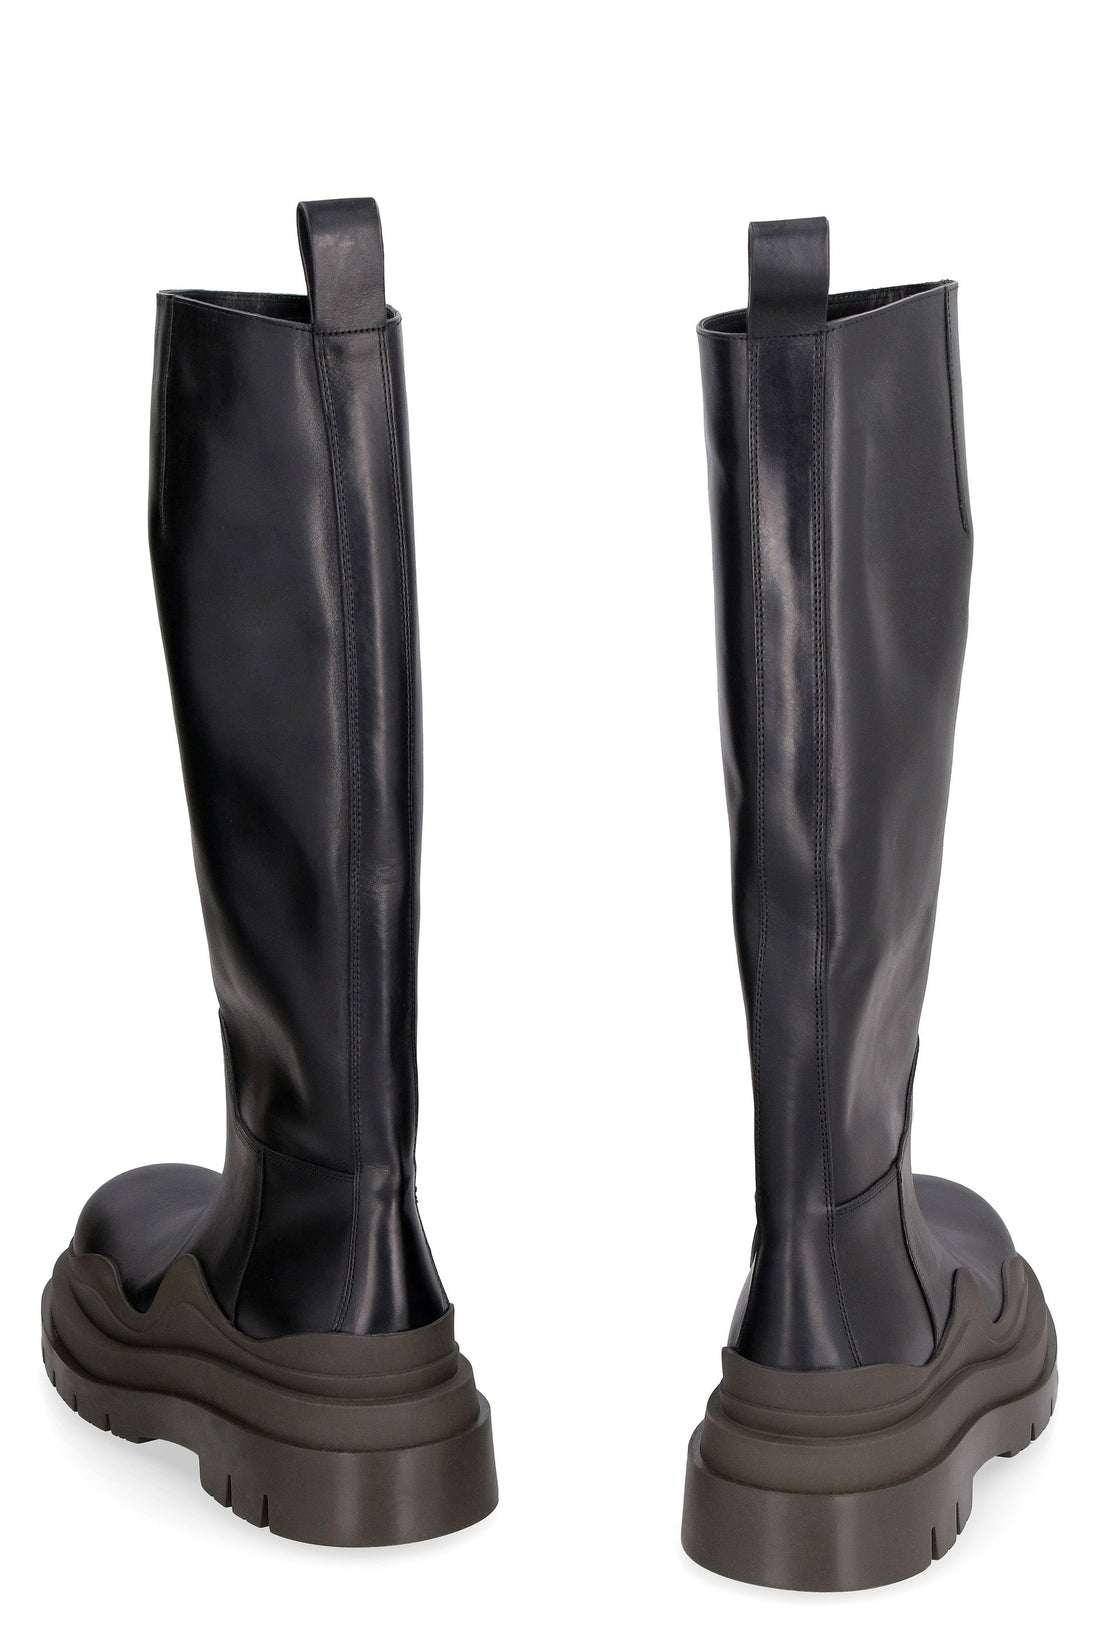 Bottega Veneta-OUTLET-SALE-Tire leather boots-ARCHIVIST